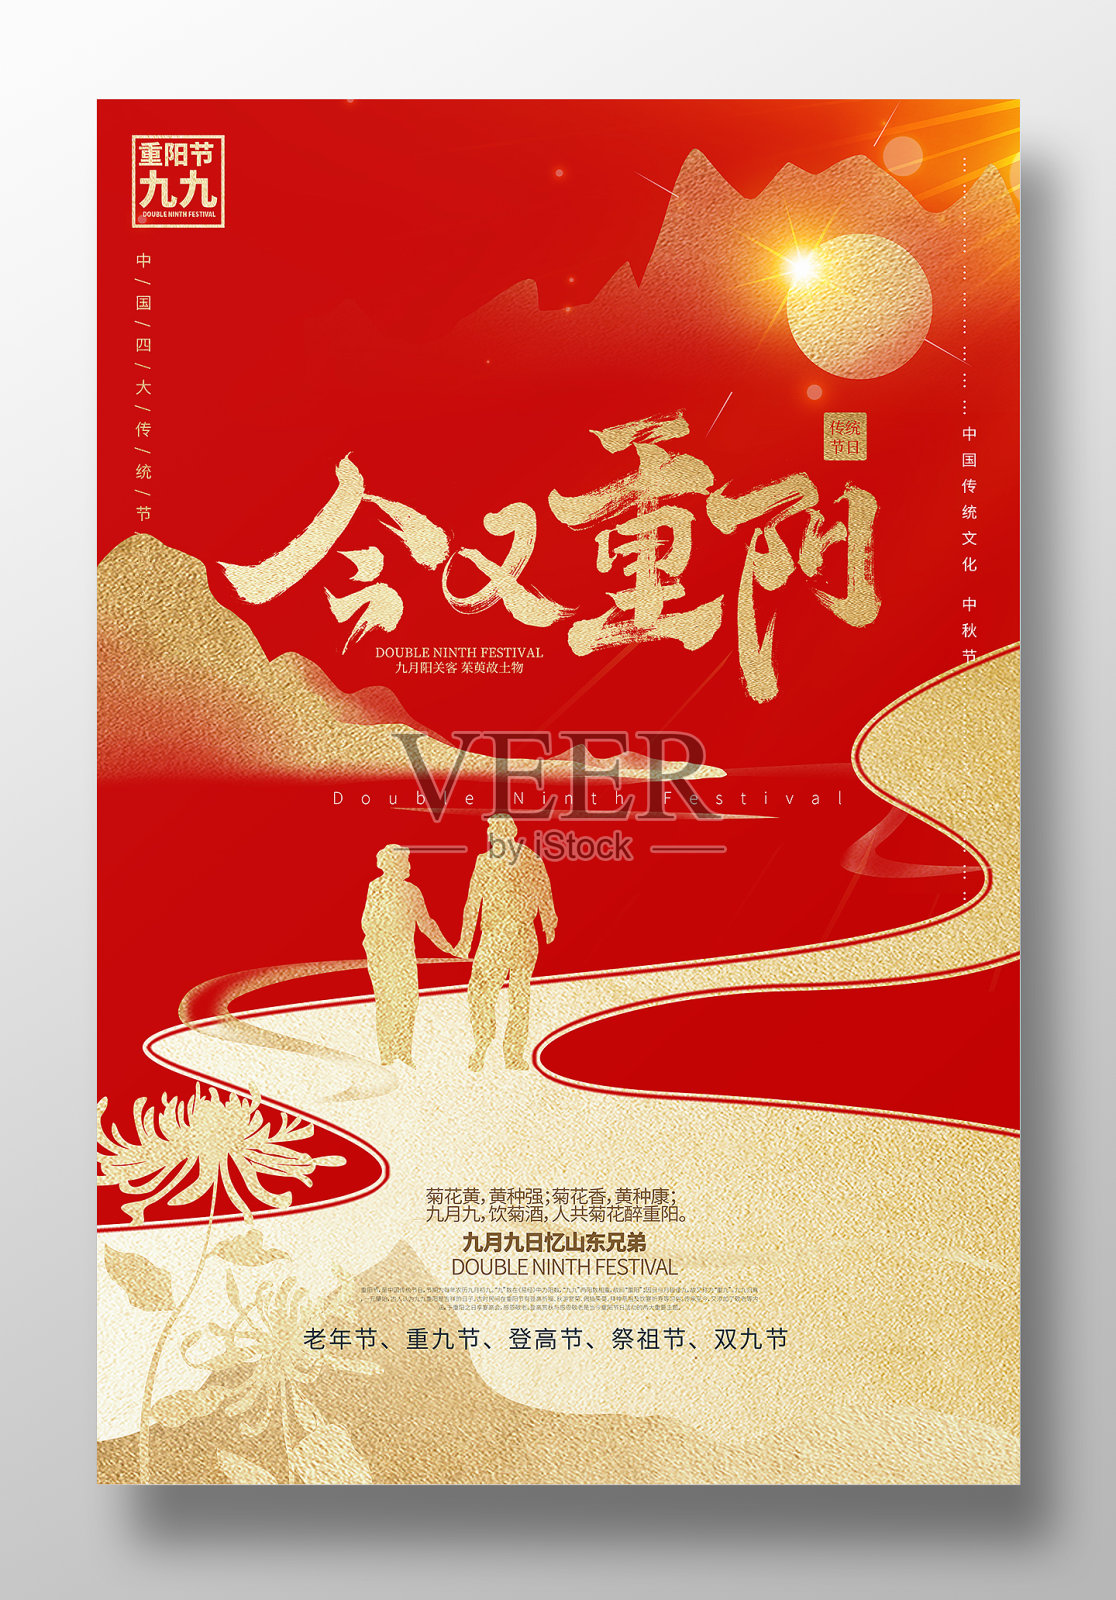 红金创意重阳节宣传海报设计设计模板素材